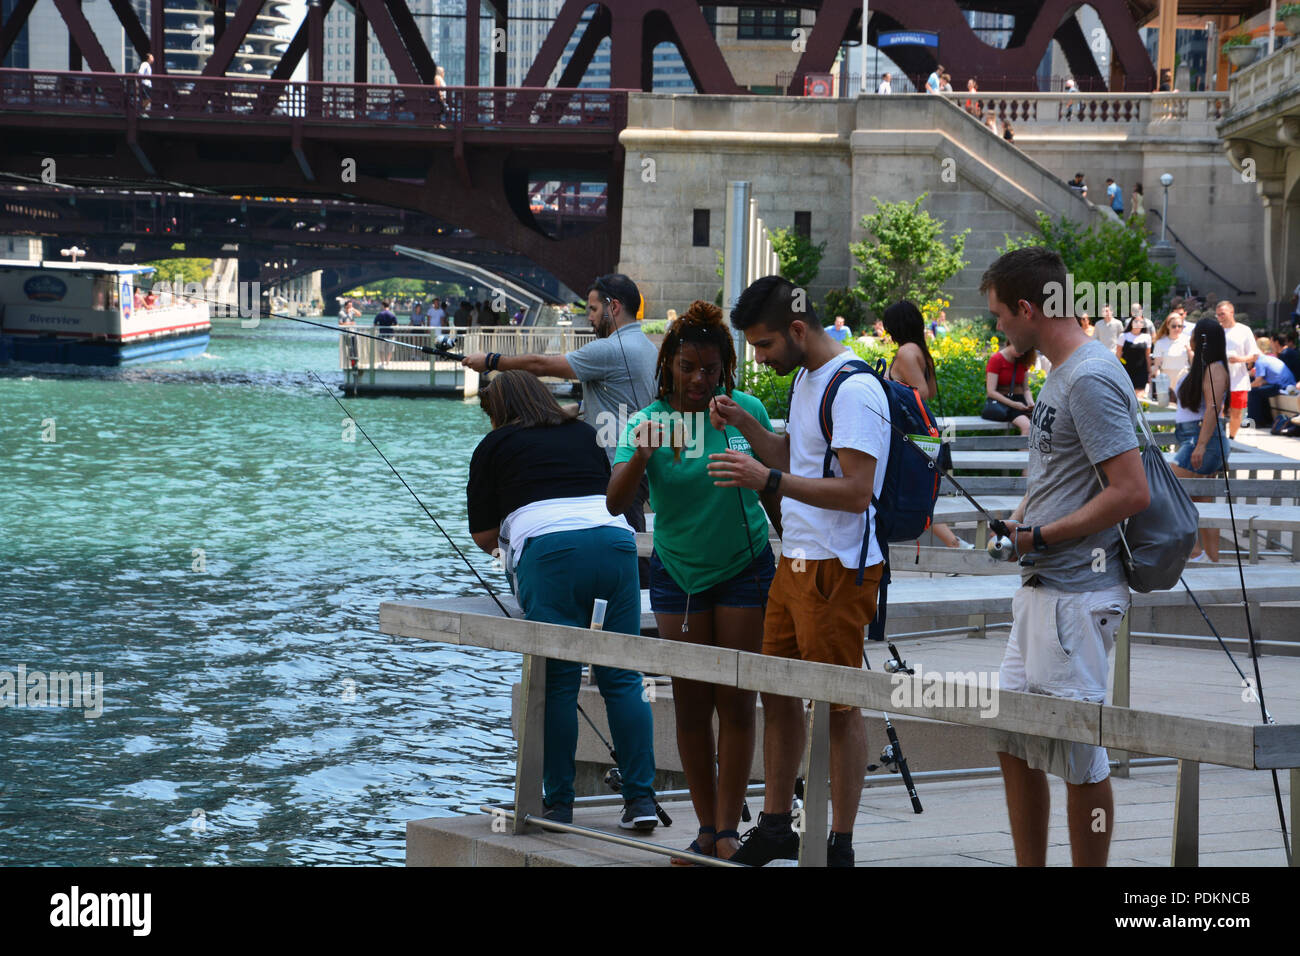 Les pêcheurs sur le Riverwalk, jardins flottants attraper une perche dans le cadre du Chicago Park District 'libre' à la jetée de pêche programme. Banque D'Images